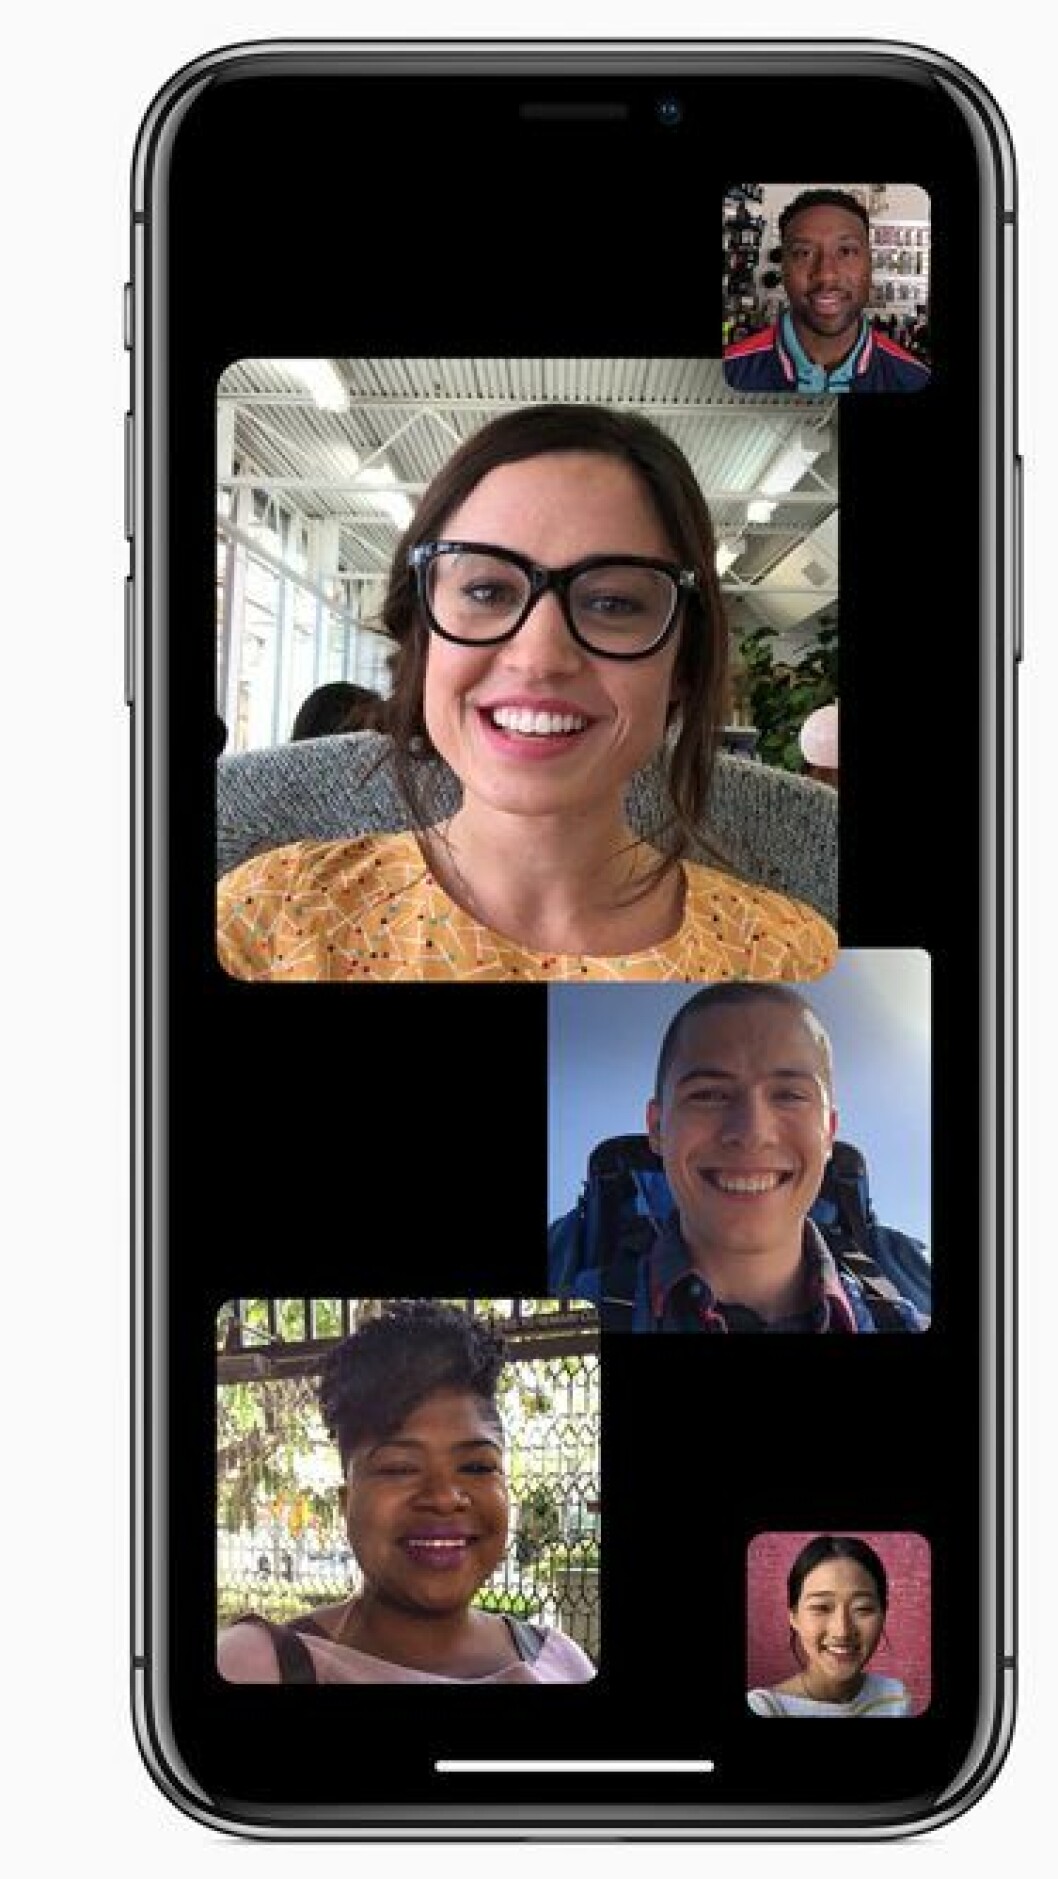 Gruppsamtal i Facetime är nu möjligt med nya iOS12 för iPhone. 